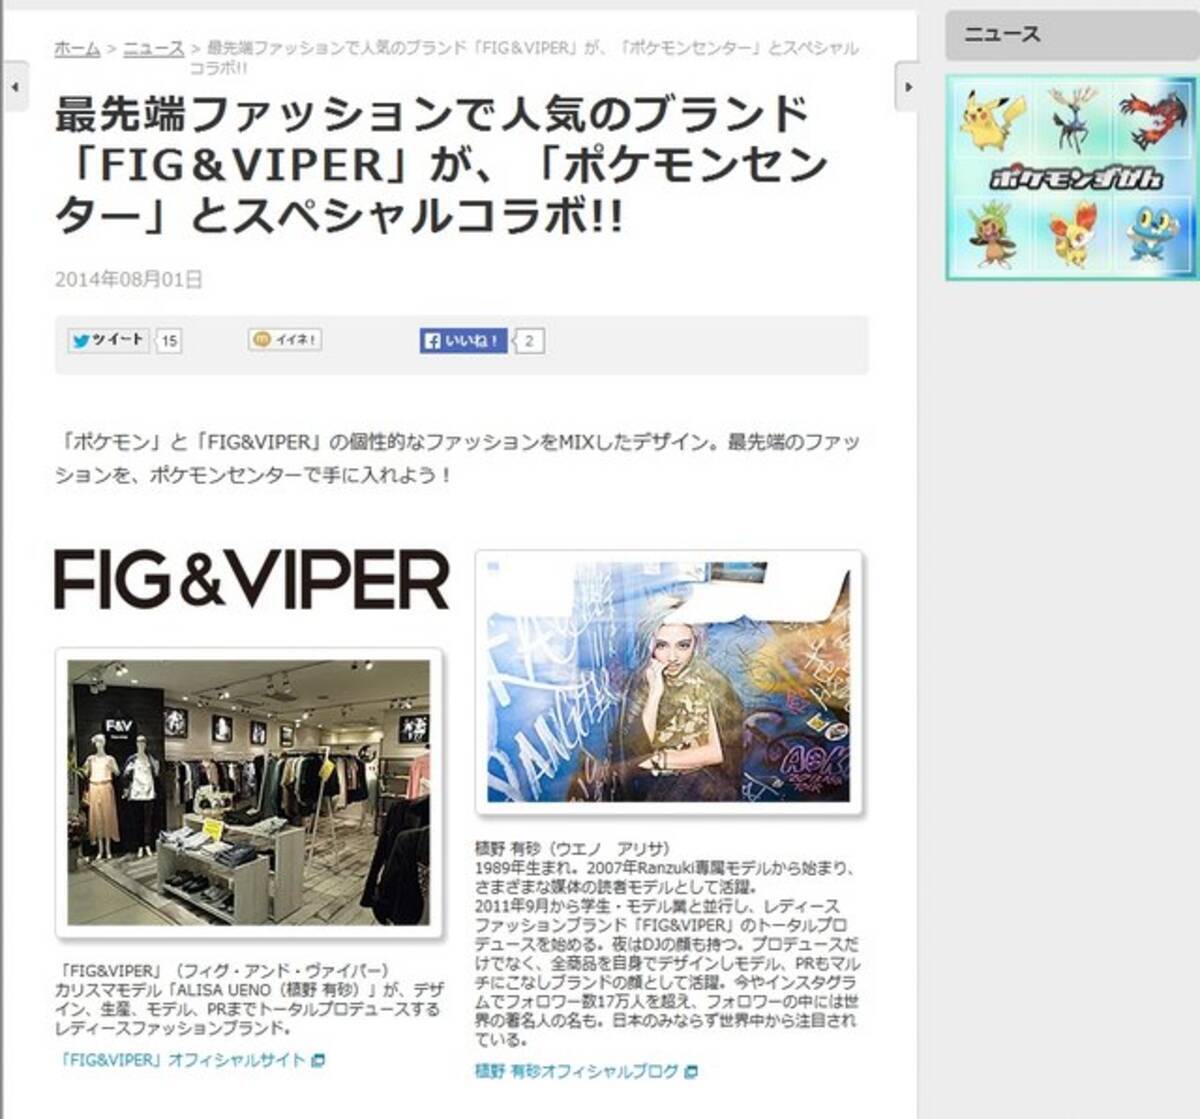 ポケモン Fig Viper のコラボファッションが登場 ふてくされたピカチュウがキュート 14年8月1日 エキサイトニュース